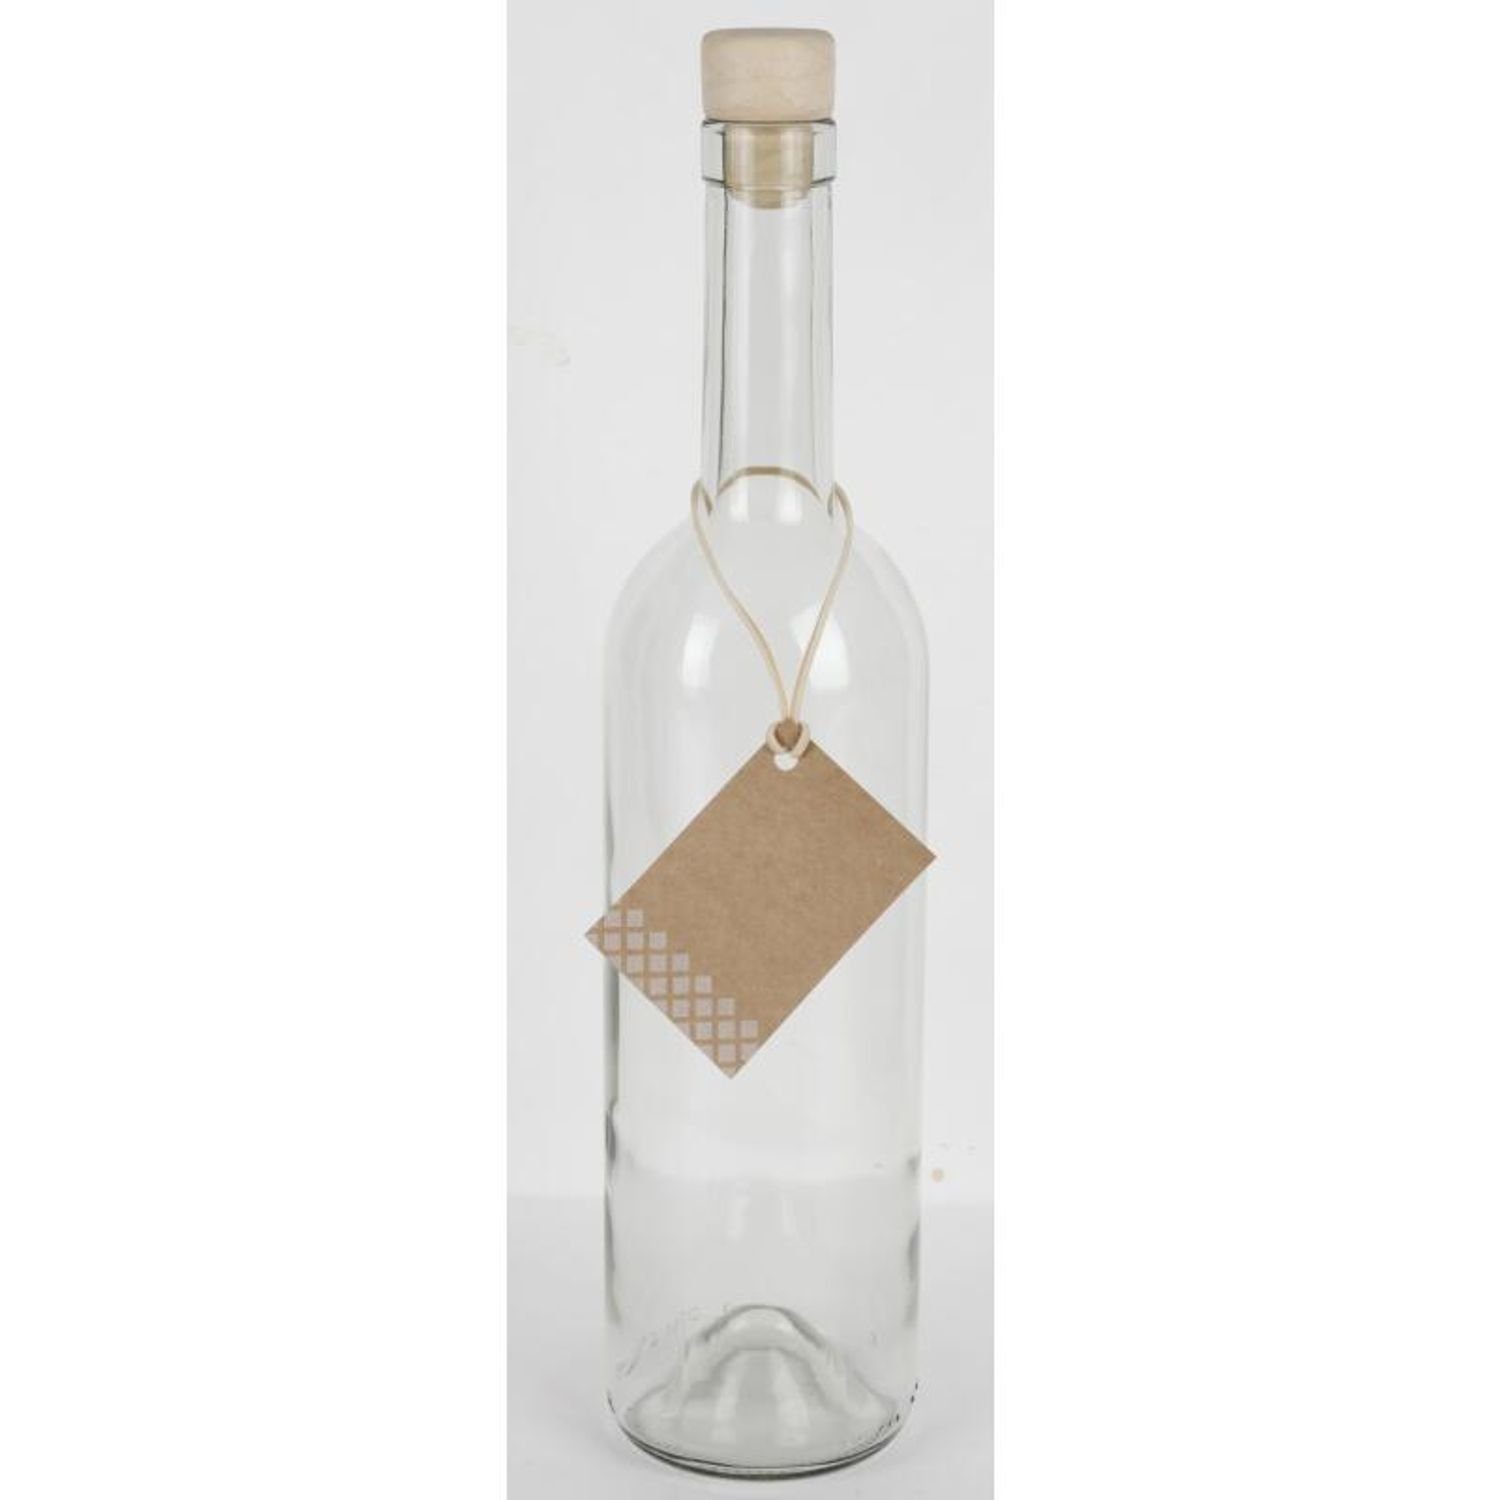 Omega Spolka Jawna Trinkflasche 15x Glasflasche 0,75L Korkenverschluss Etikett Saft Wasser Trinken Küc